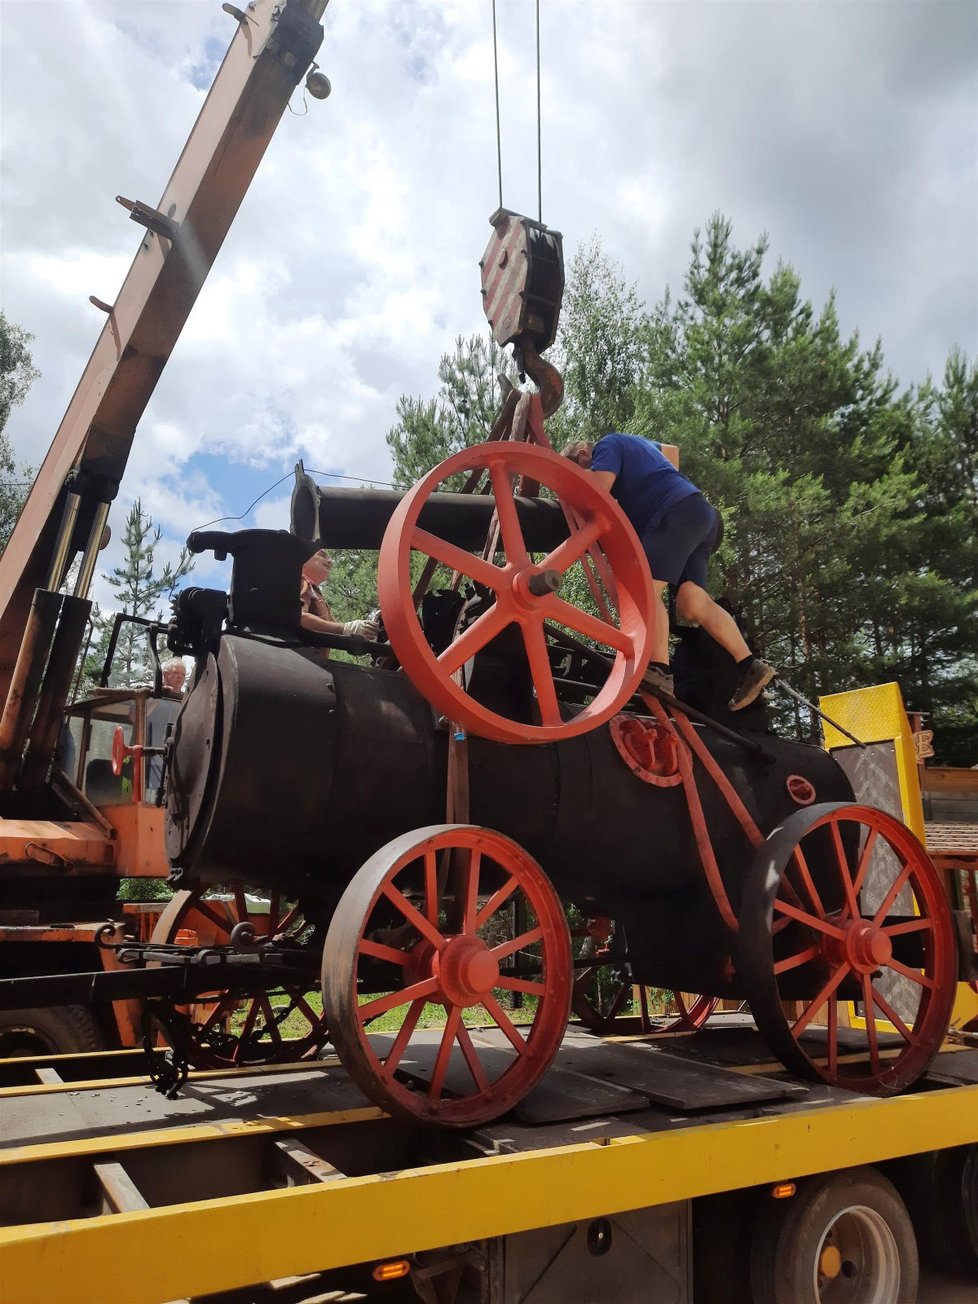 Náročný převoz parního stroje z muzea do westernového městečka vzbudil ve městě pozornost. Stroj má naštěstí sklápěcí komín, což usnadnilo přepravu.